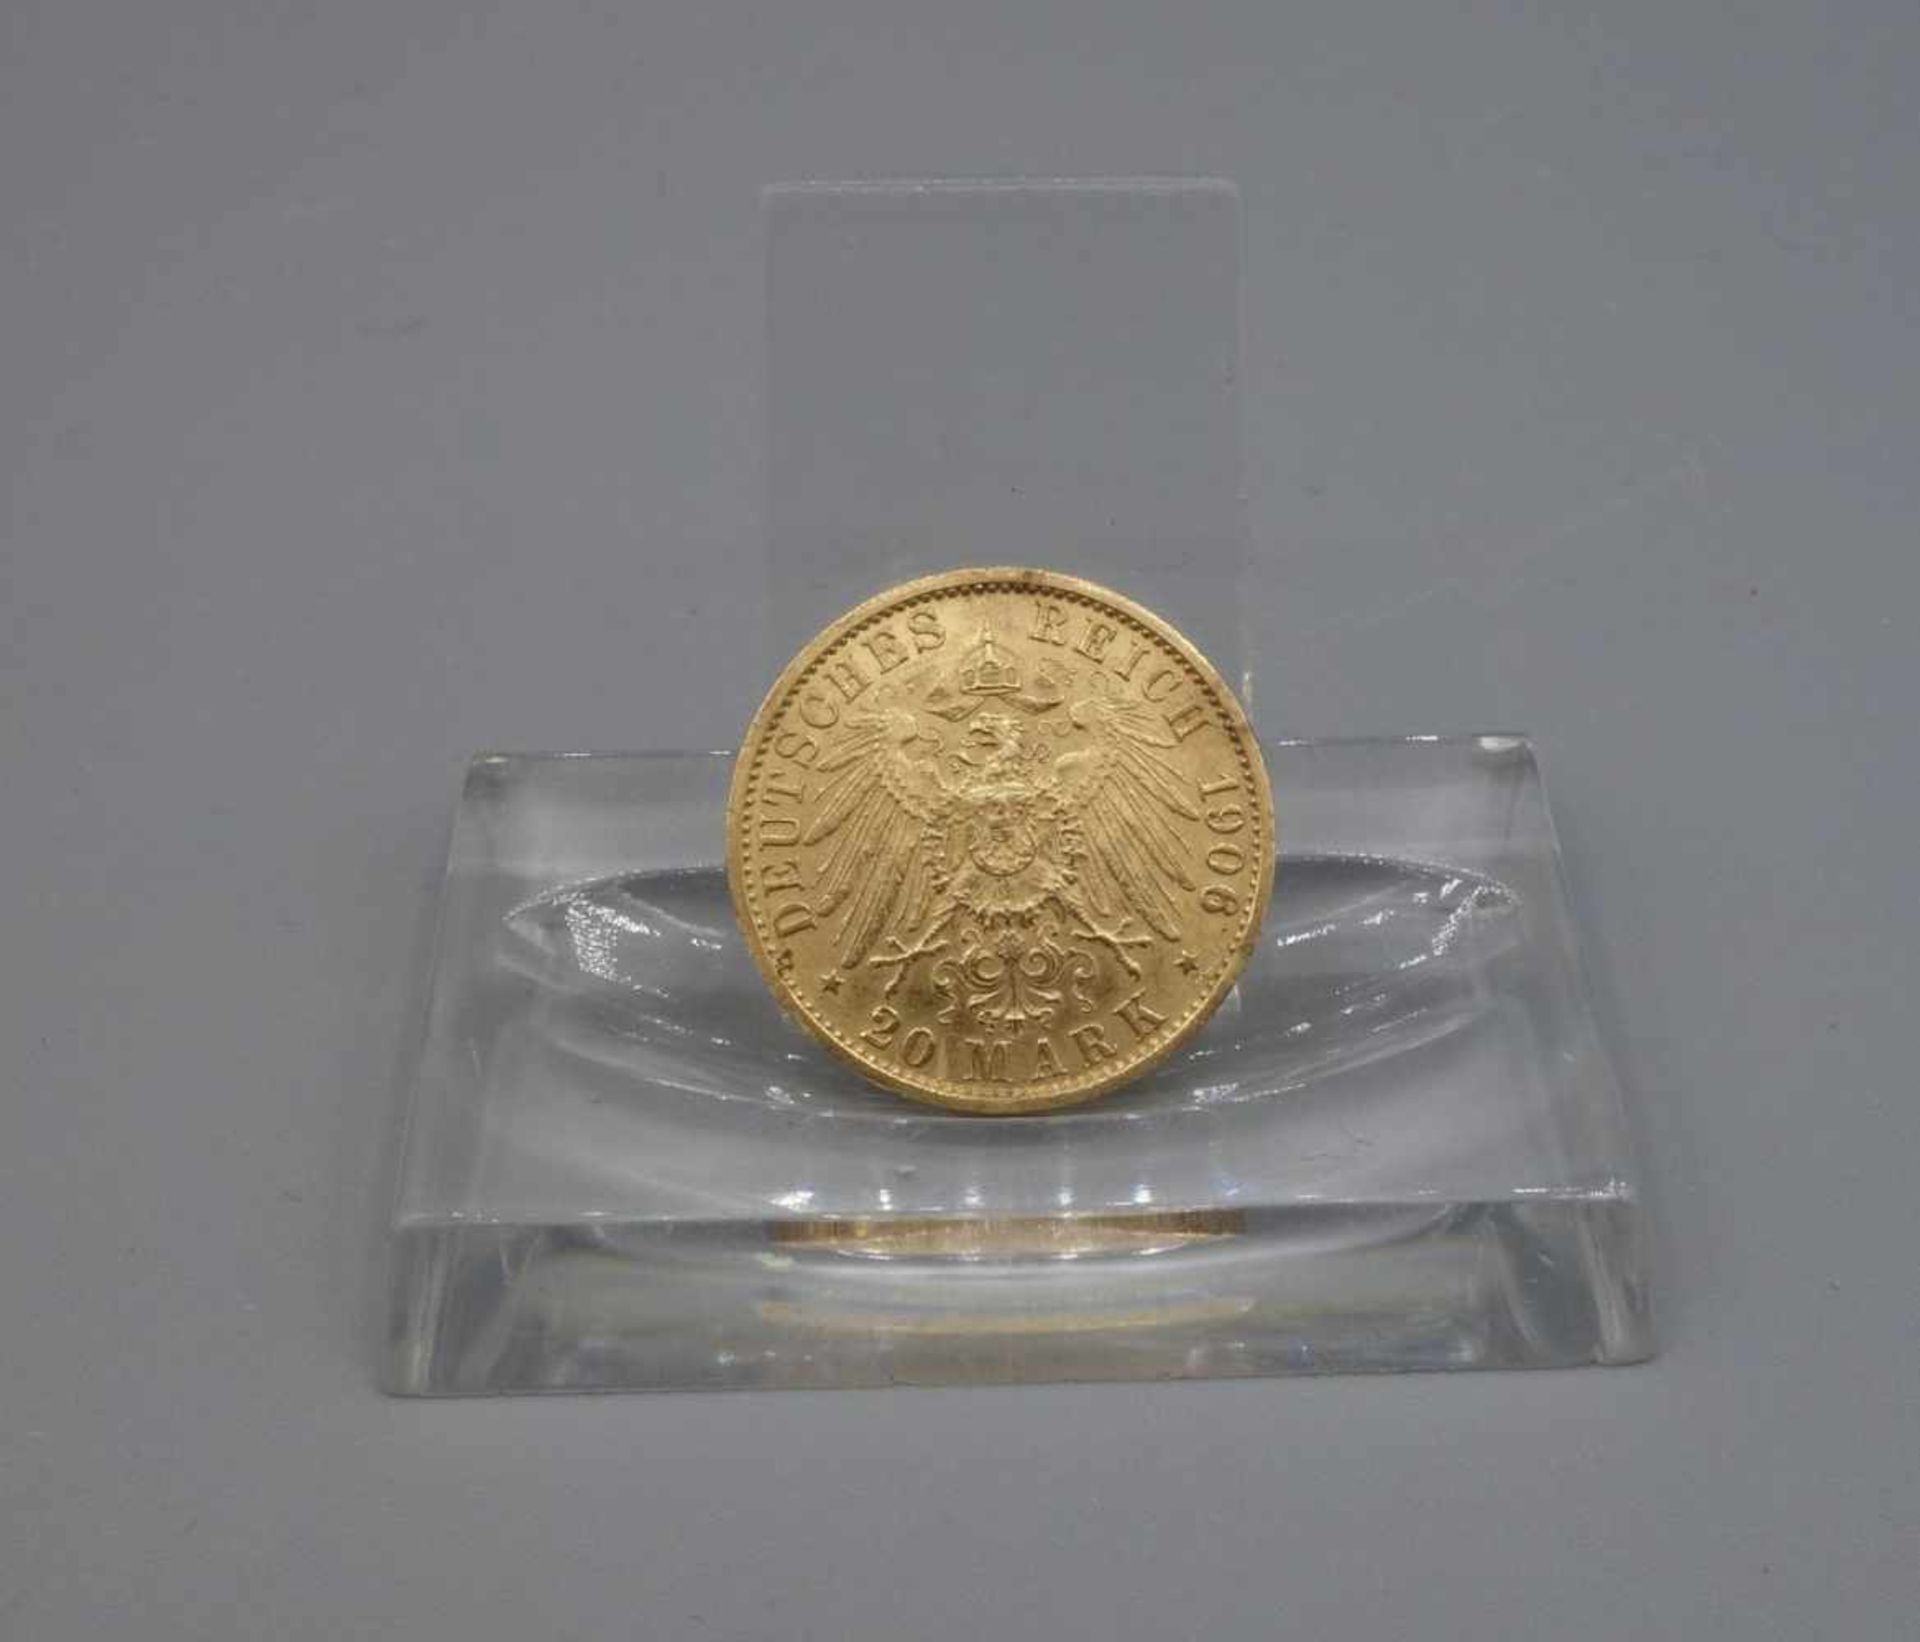 REICHSGOLDMÜNZE KAISER WILHELMS II. / coin, 7,5 g. Umlaufgoldmünze des deutschen Kaiserreichs. - Bild 2 aus 2